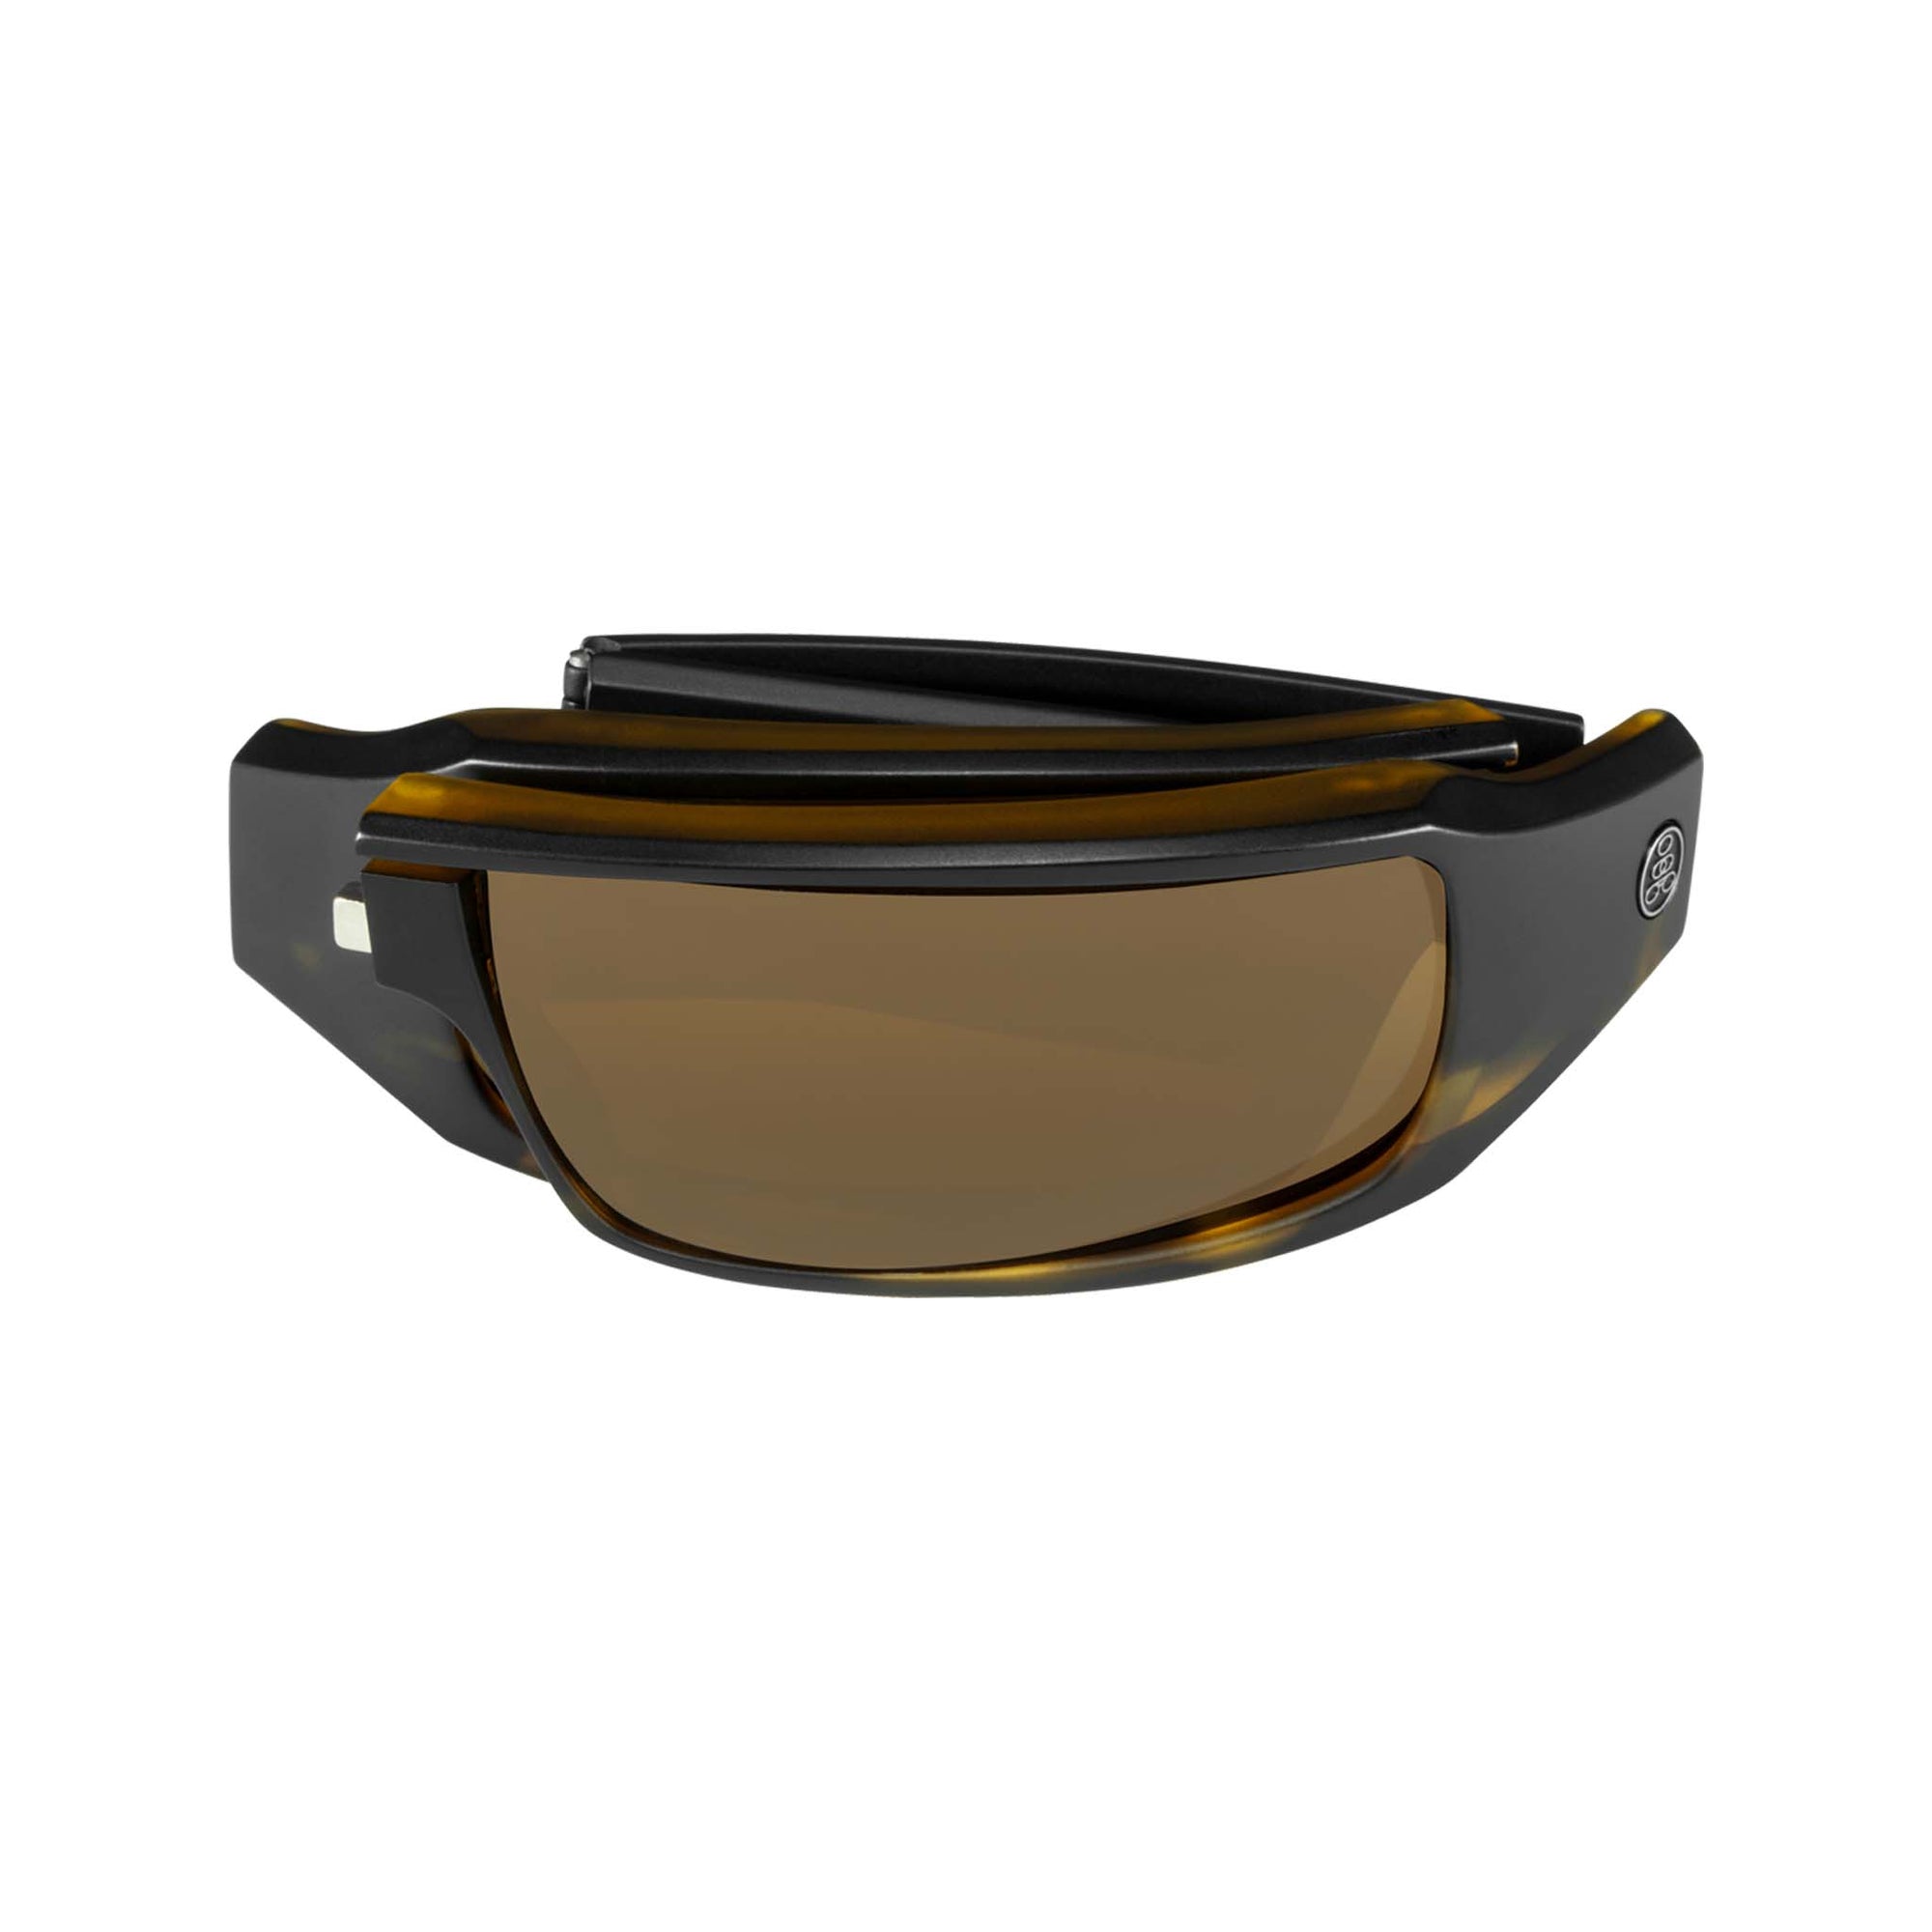 Popticals, Premium Compact Sunglasses, PopSign, 010020-AUNP, Polarized Sunglasses, Matte Black/Tortoise Frame, Brown Lenses, Compact View